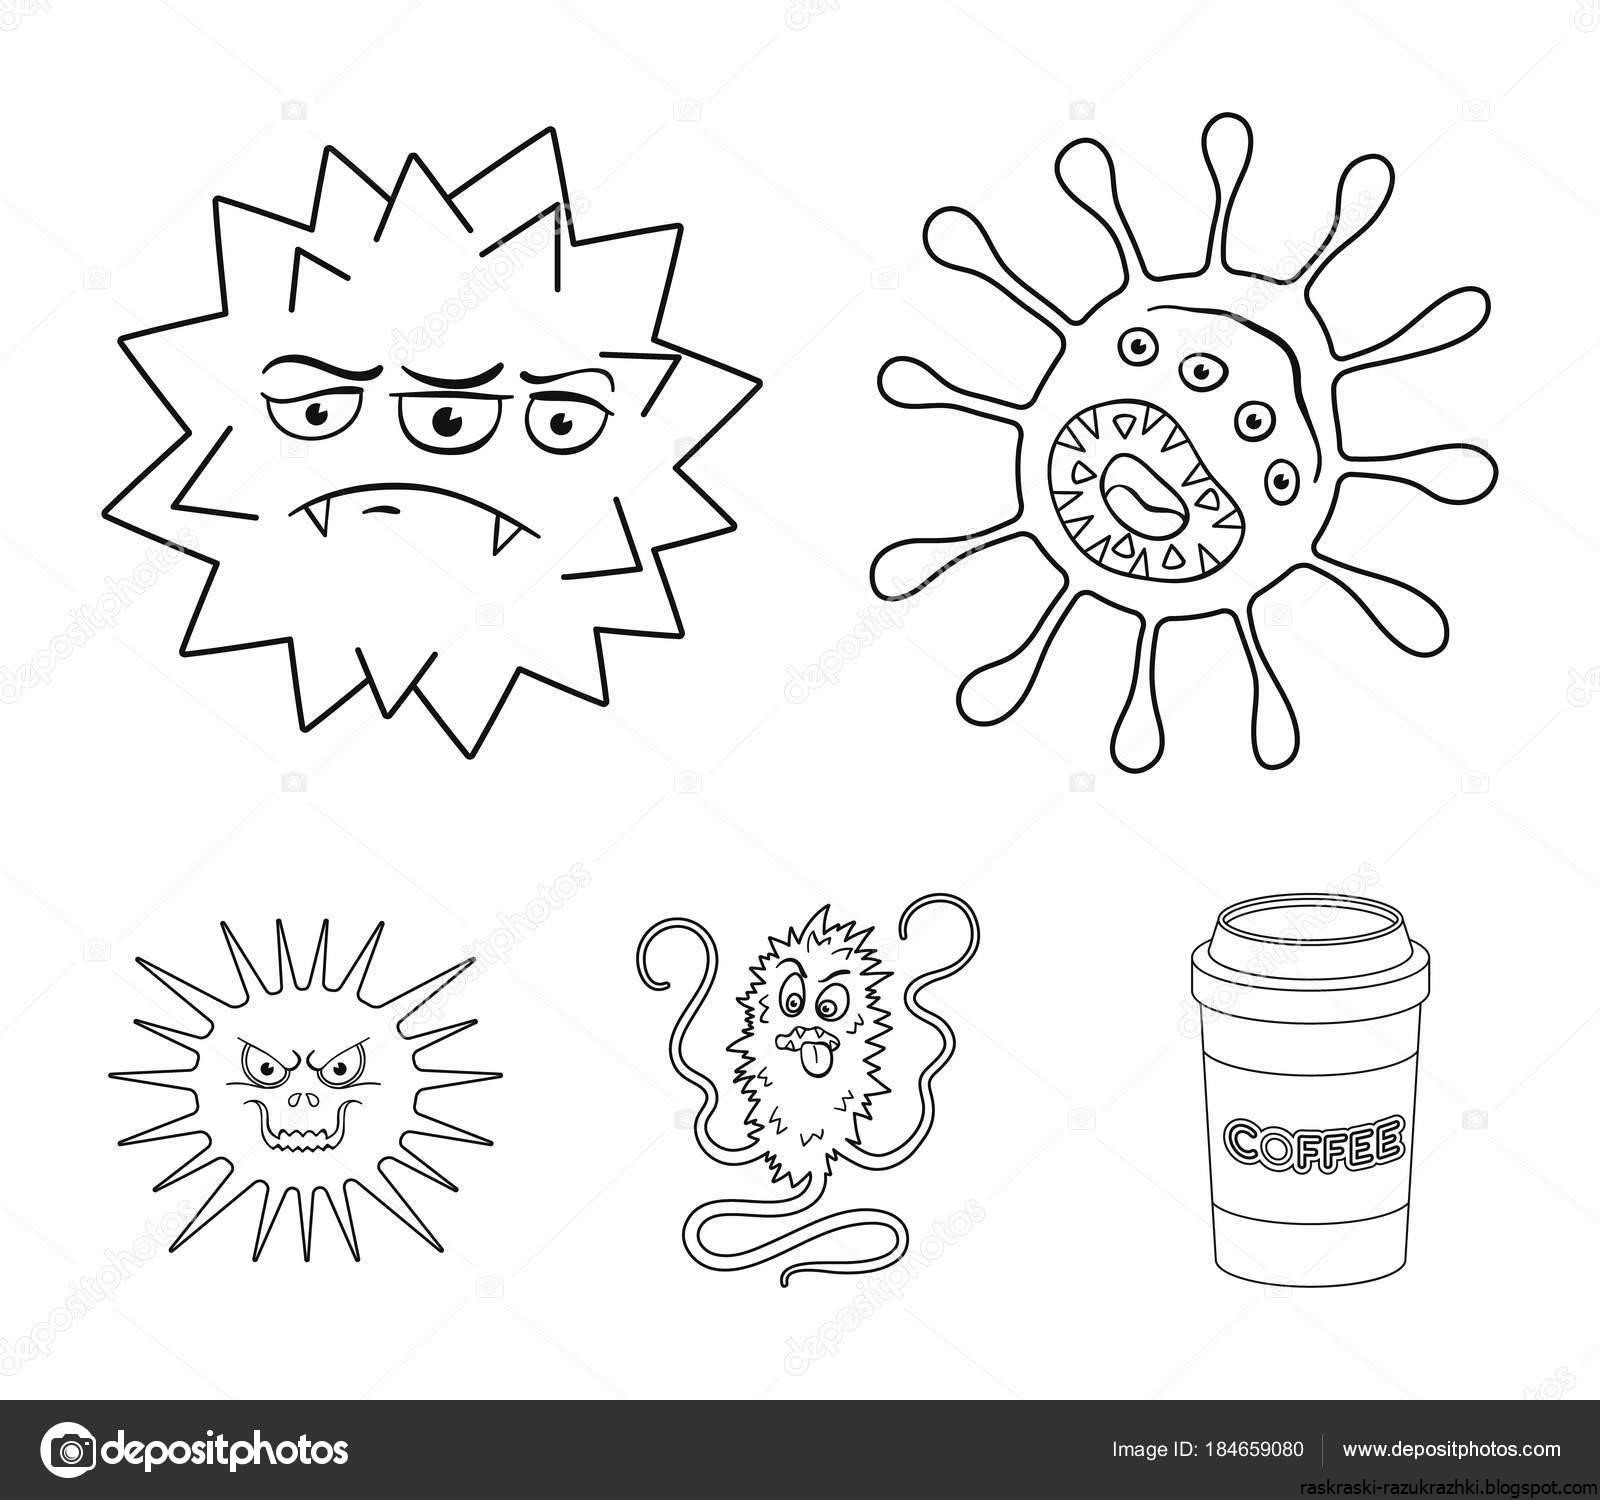 Раскраски вирусы и бактерии для детей